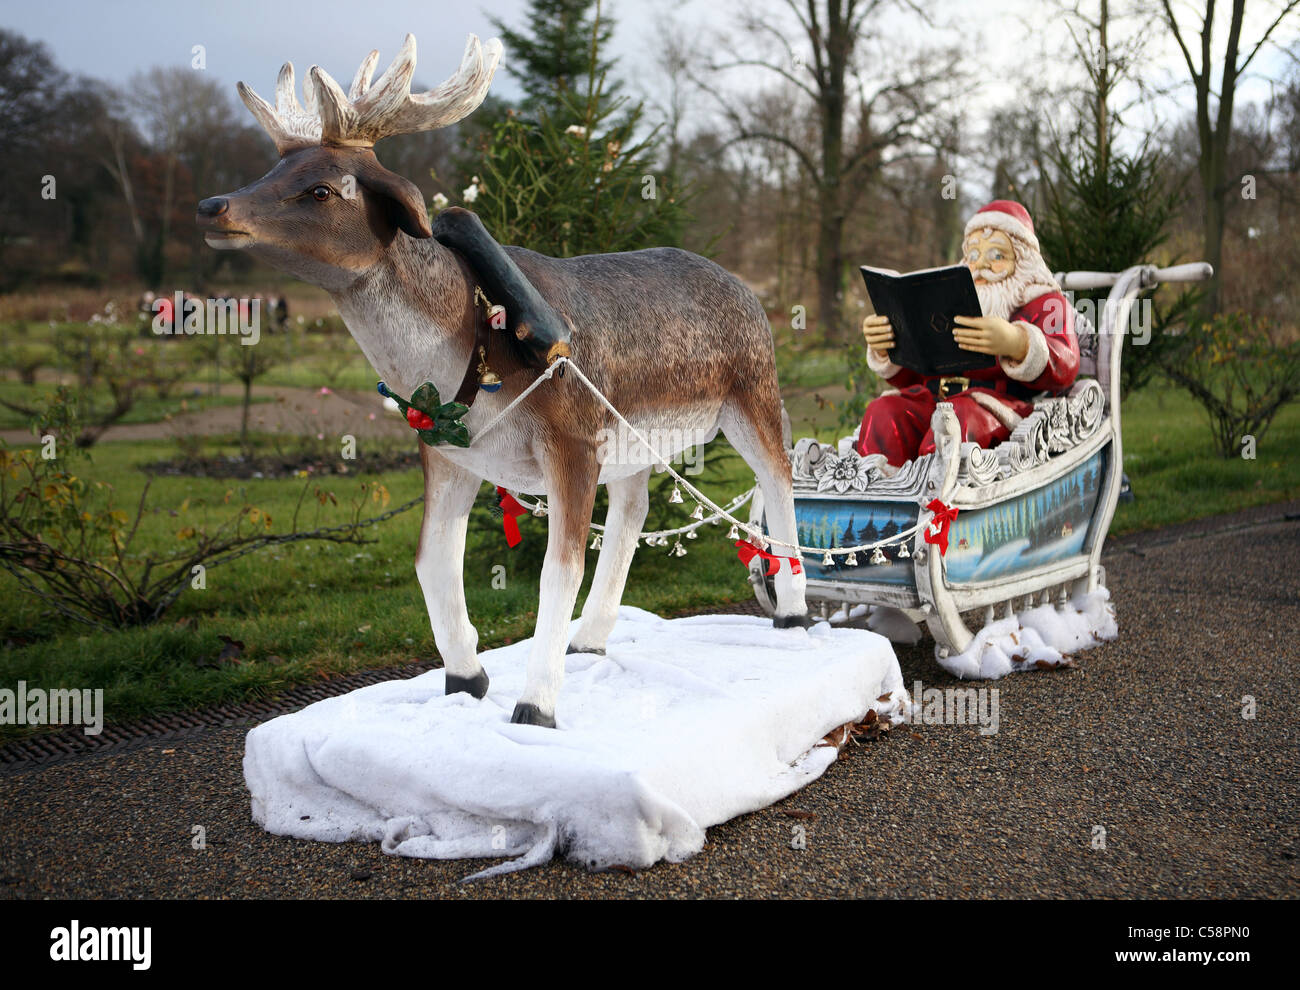 Sculpture du Père Noël dans son traîneau de rennes, Potsdam, Allemagne Banque D'Images